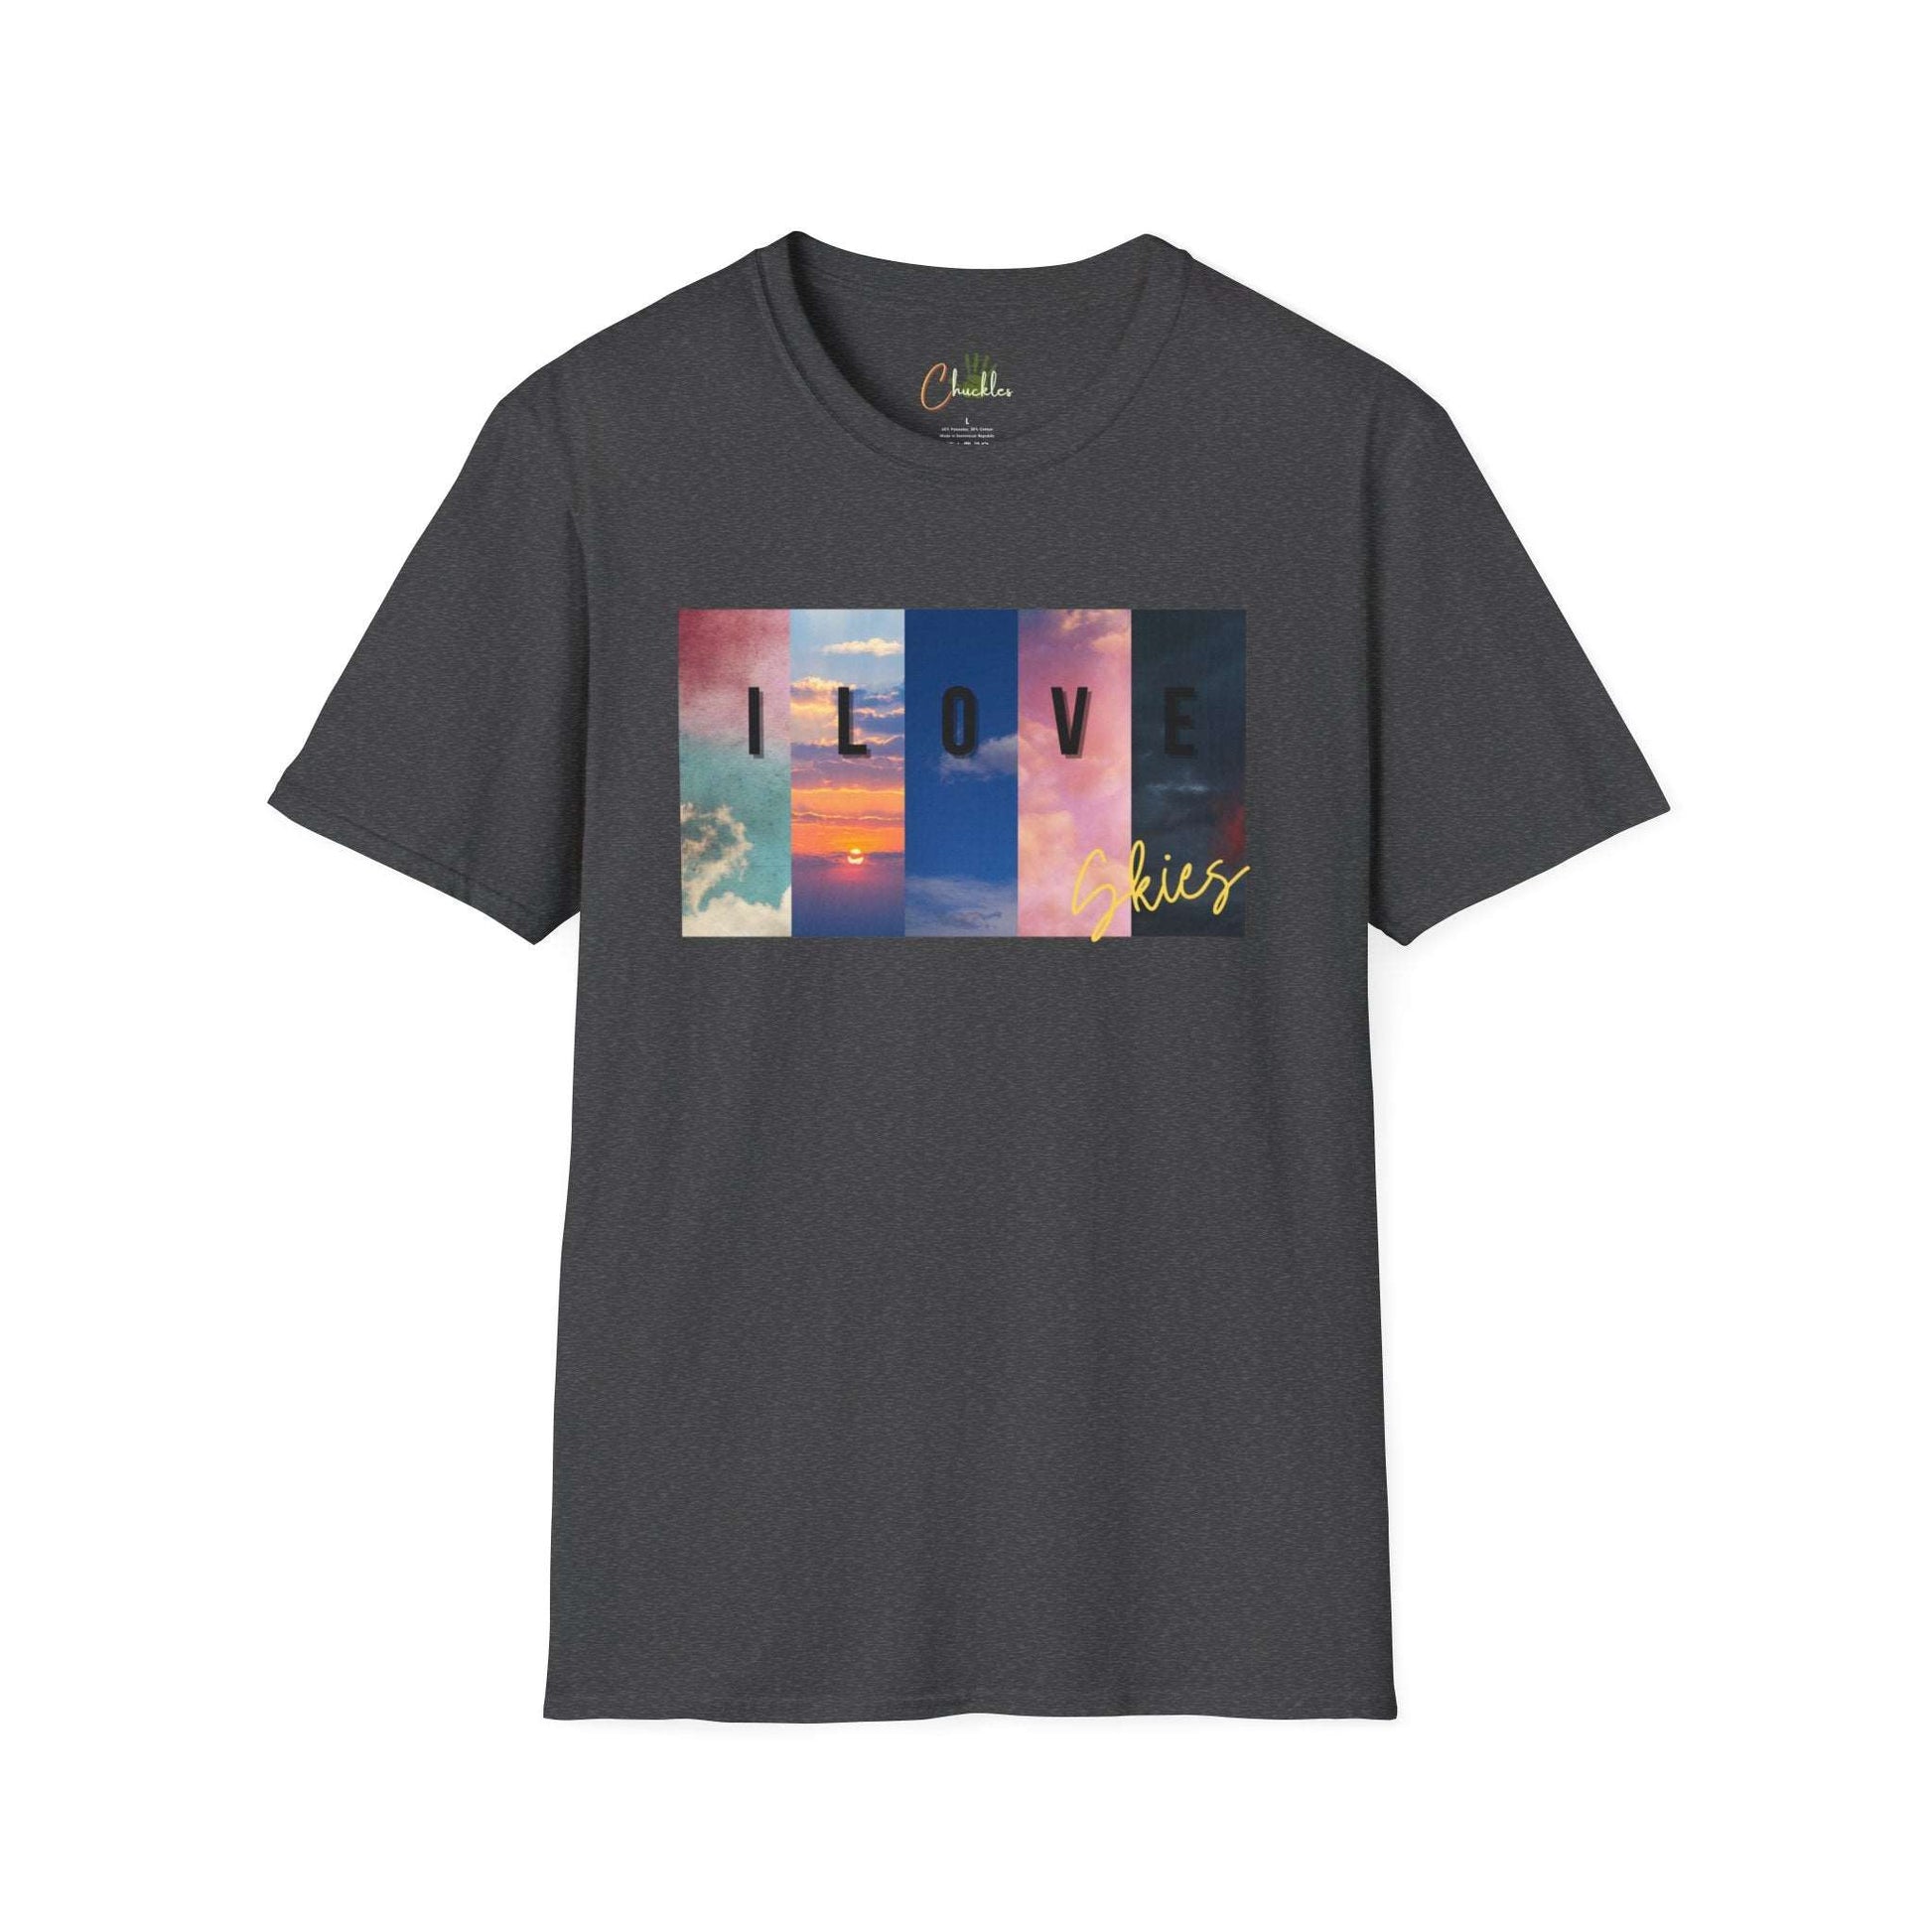 I love skies Unisex Softstyle T-Shirt